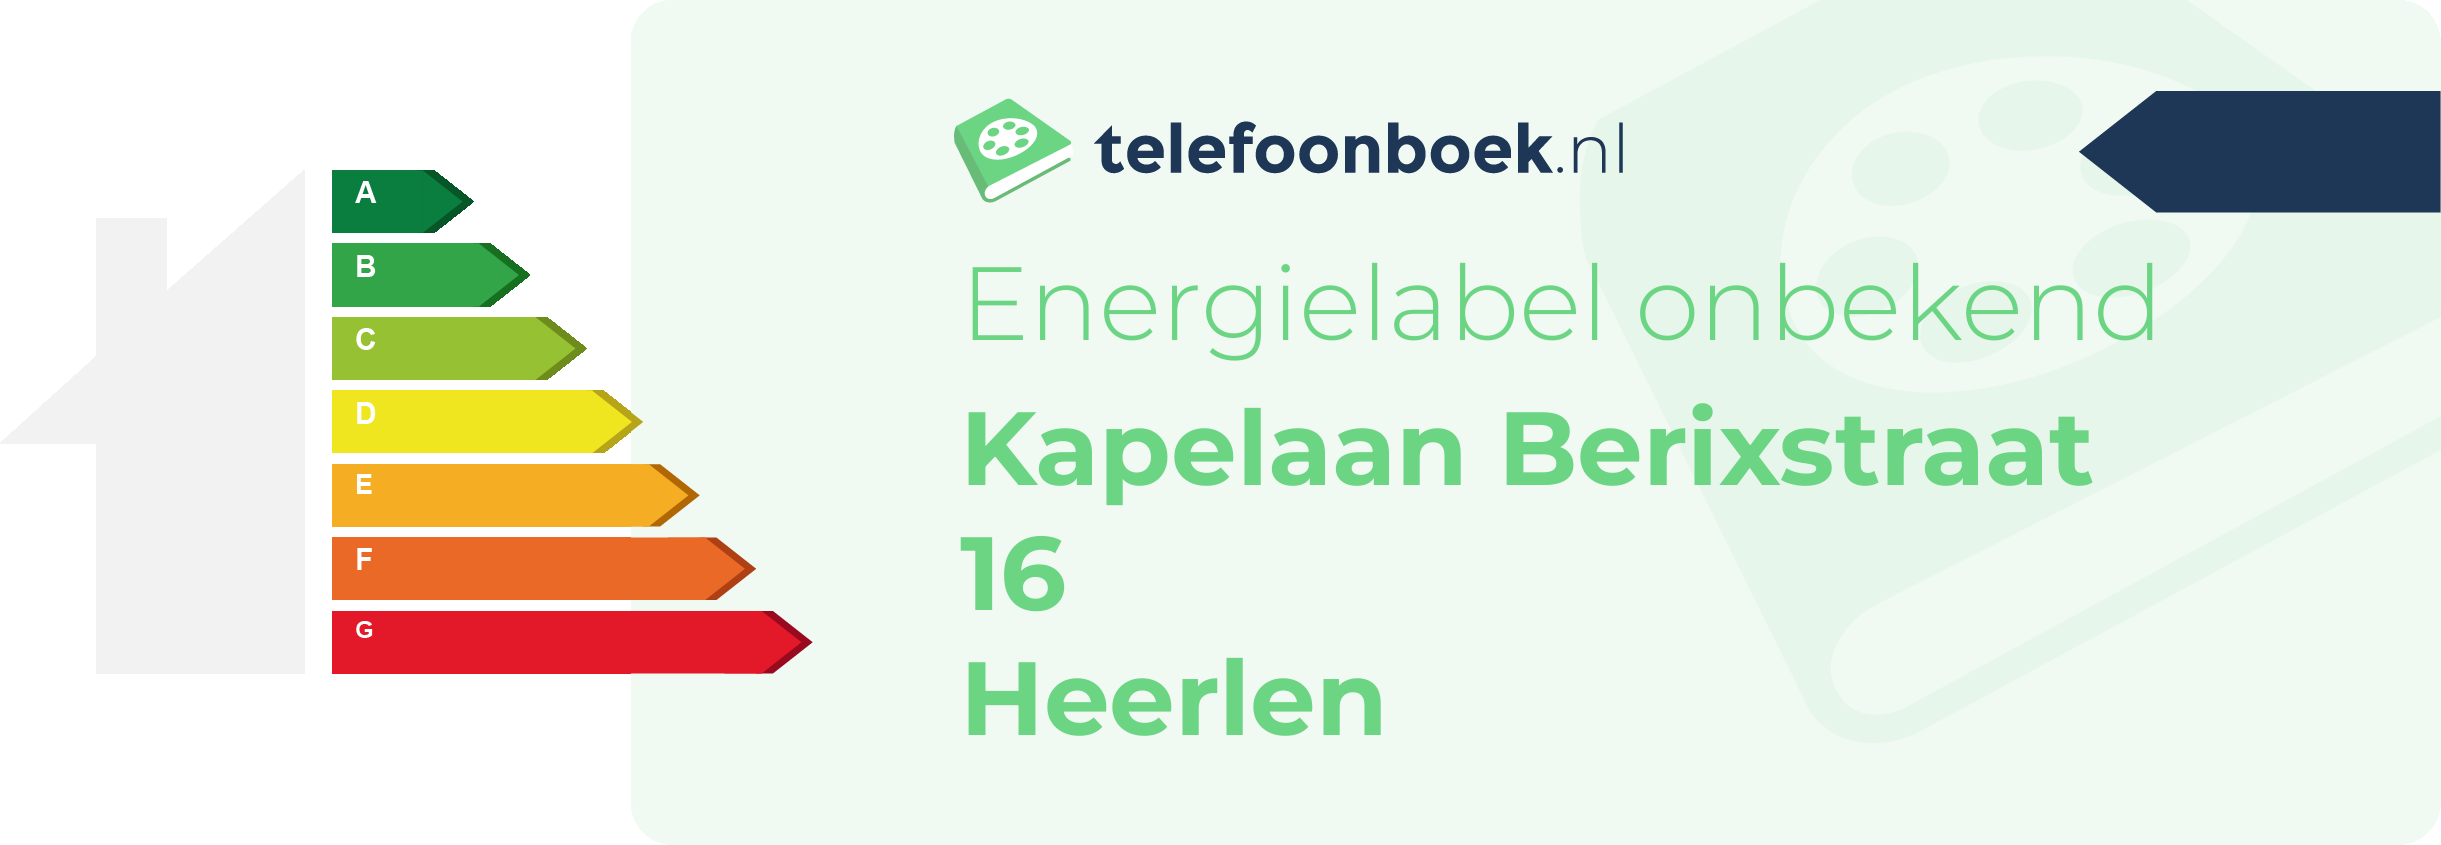 Energielabel Kapelaan Berixstraat 16 Heerlen